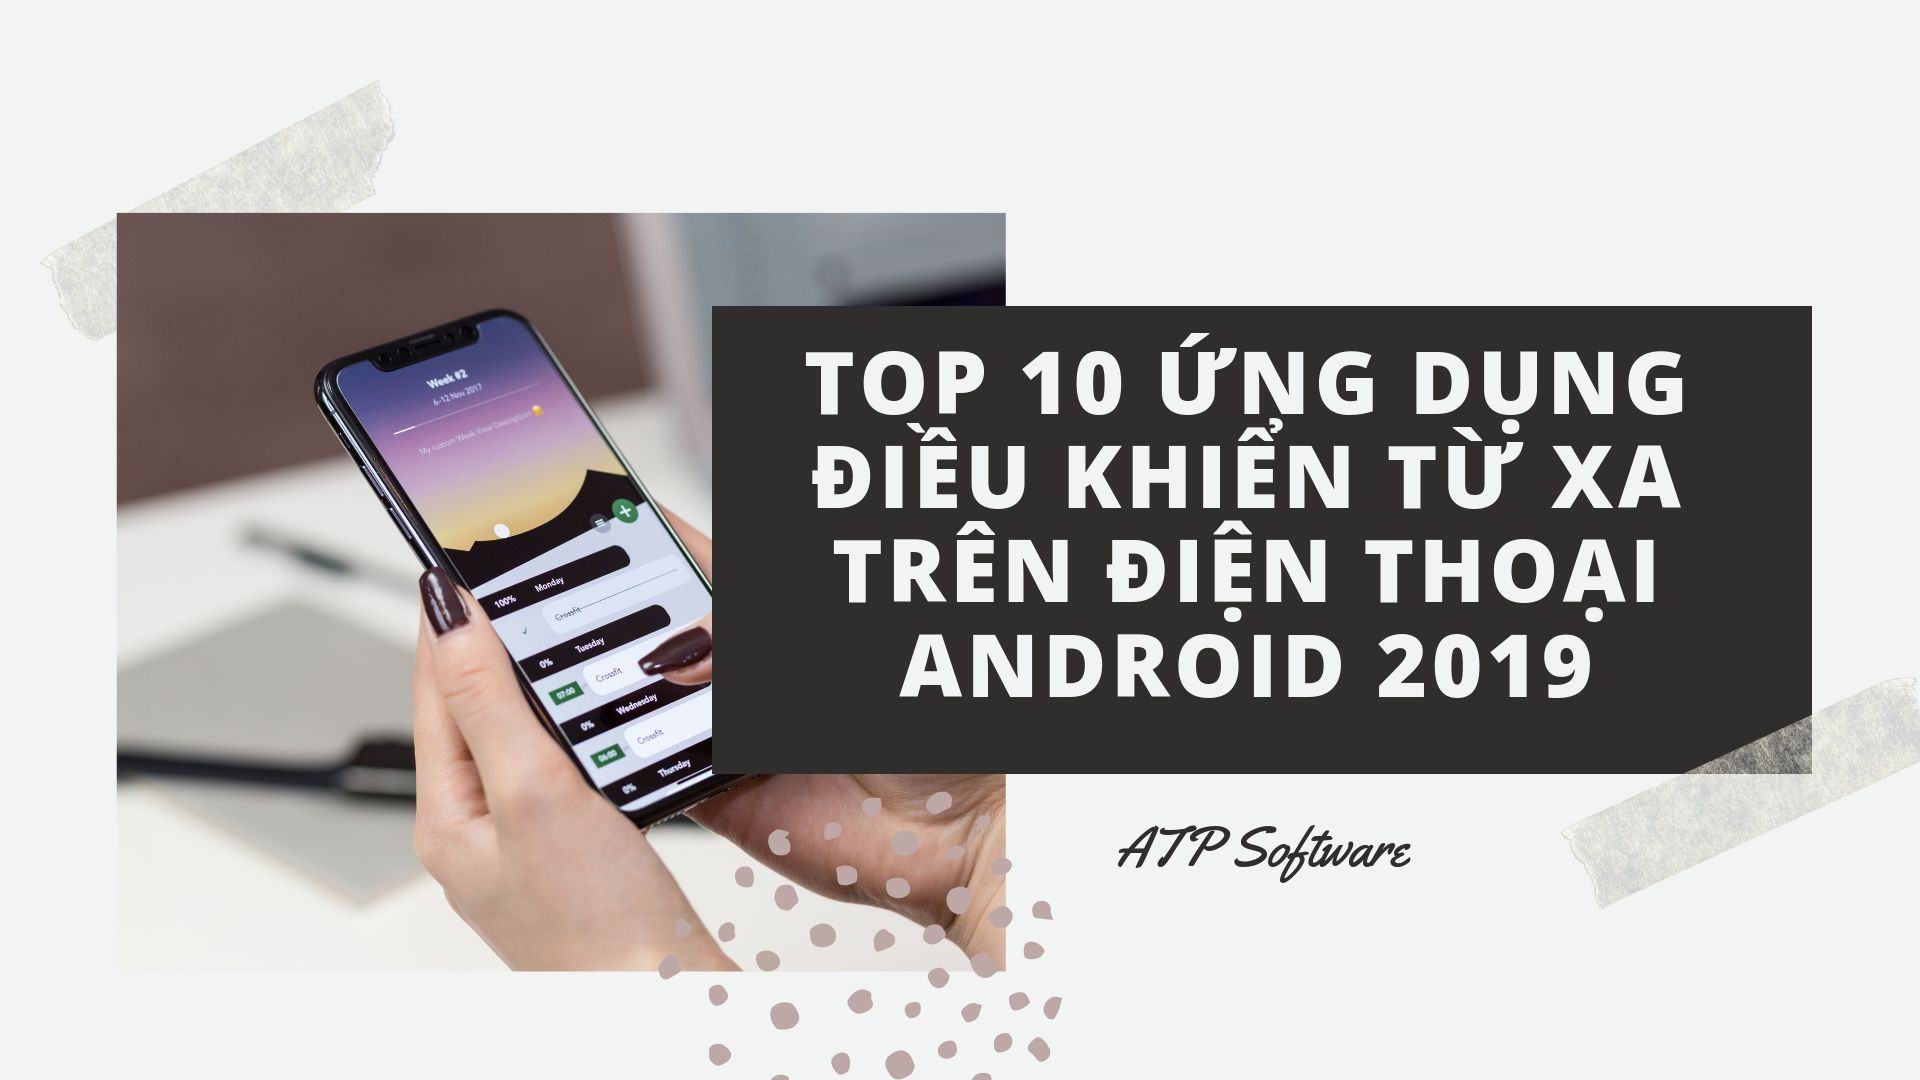 Top 10 Ứng dụng điều khiển từ xa trên điện thoại Android